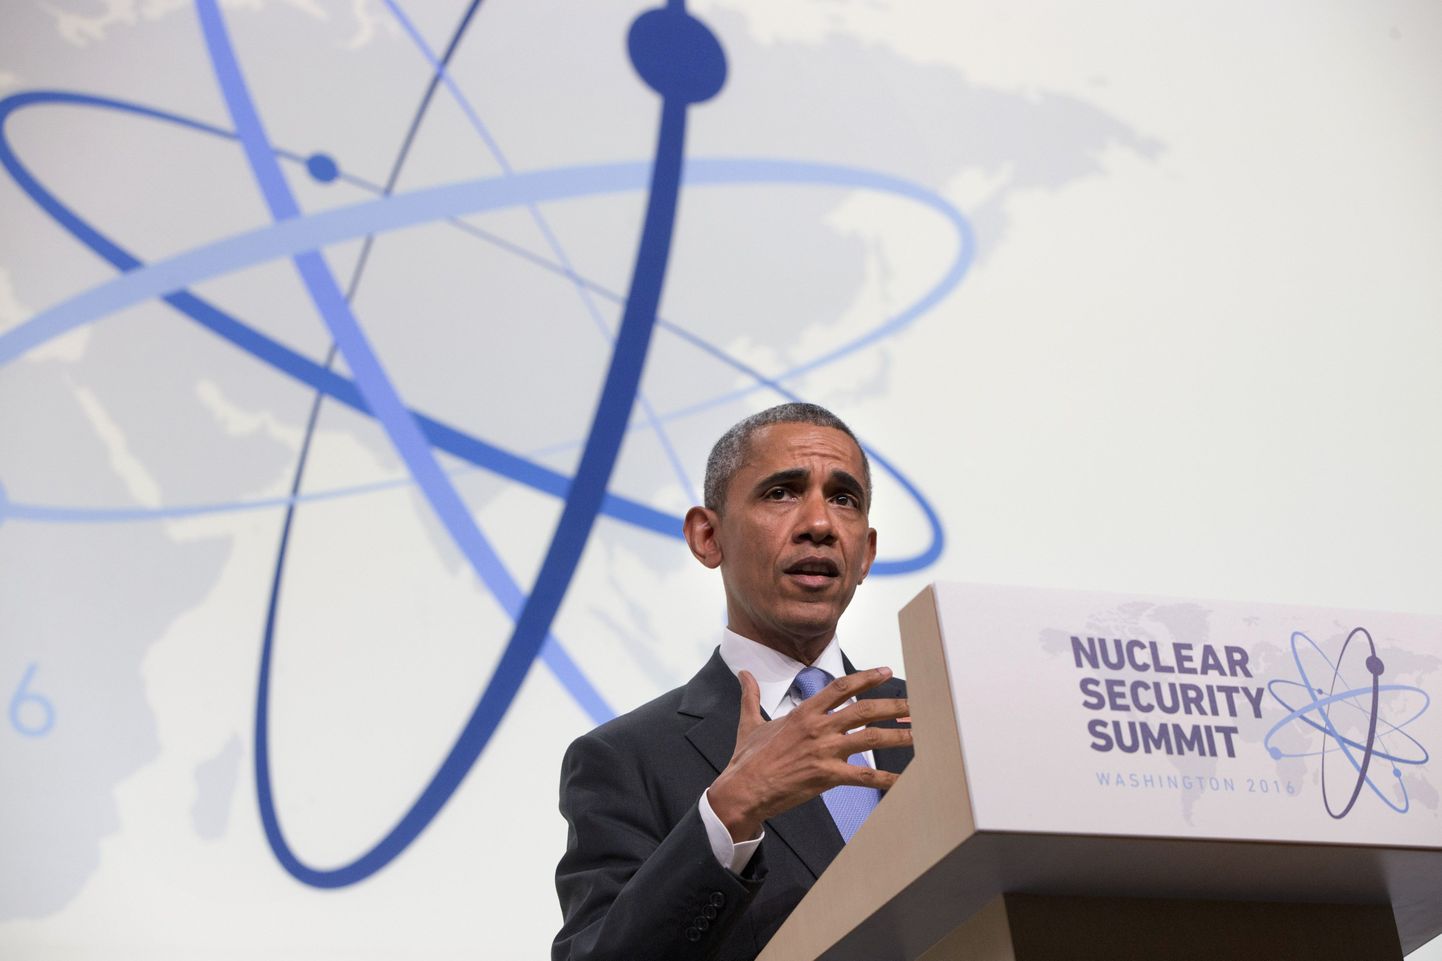 President Barack Obama tuumatippkohtumisel